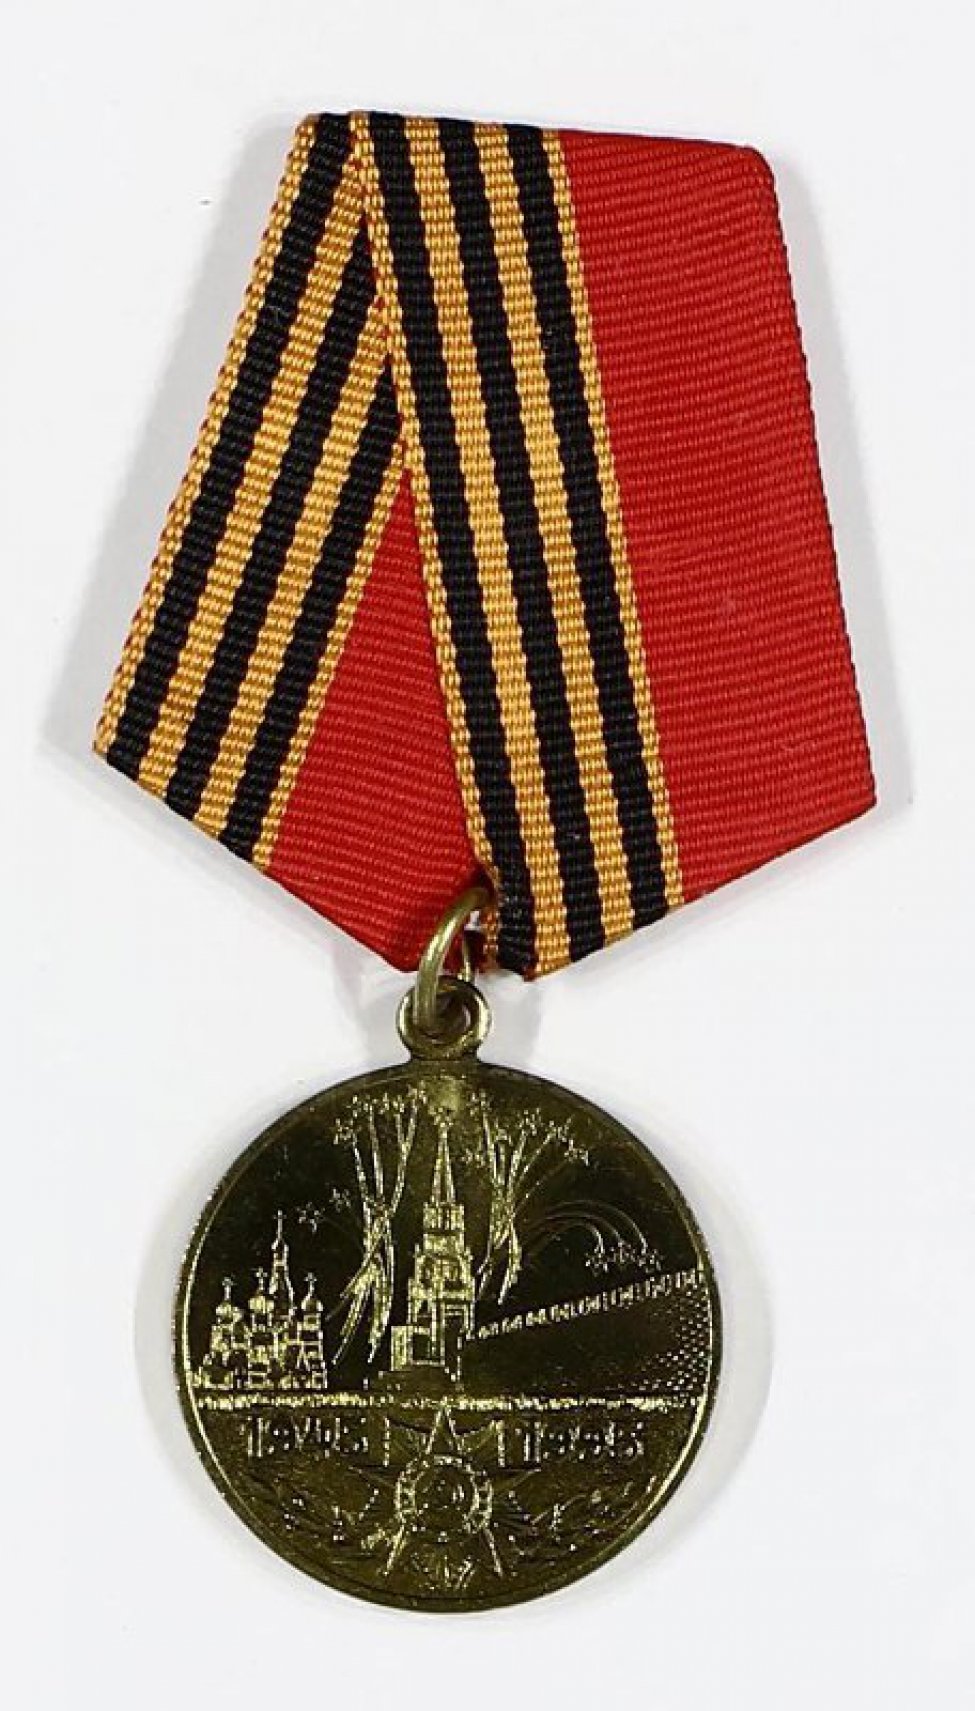 Картинки орденов и медалей великой отечественной